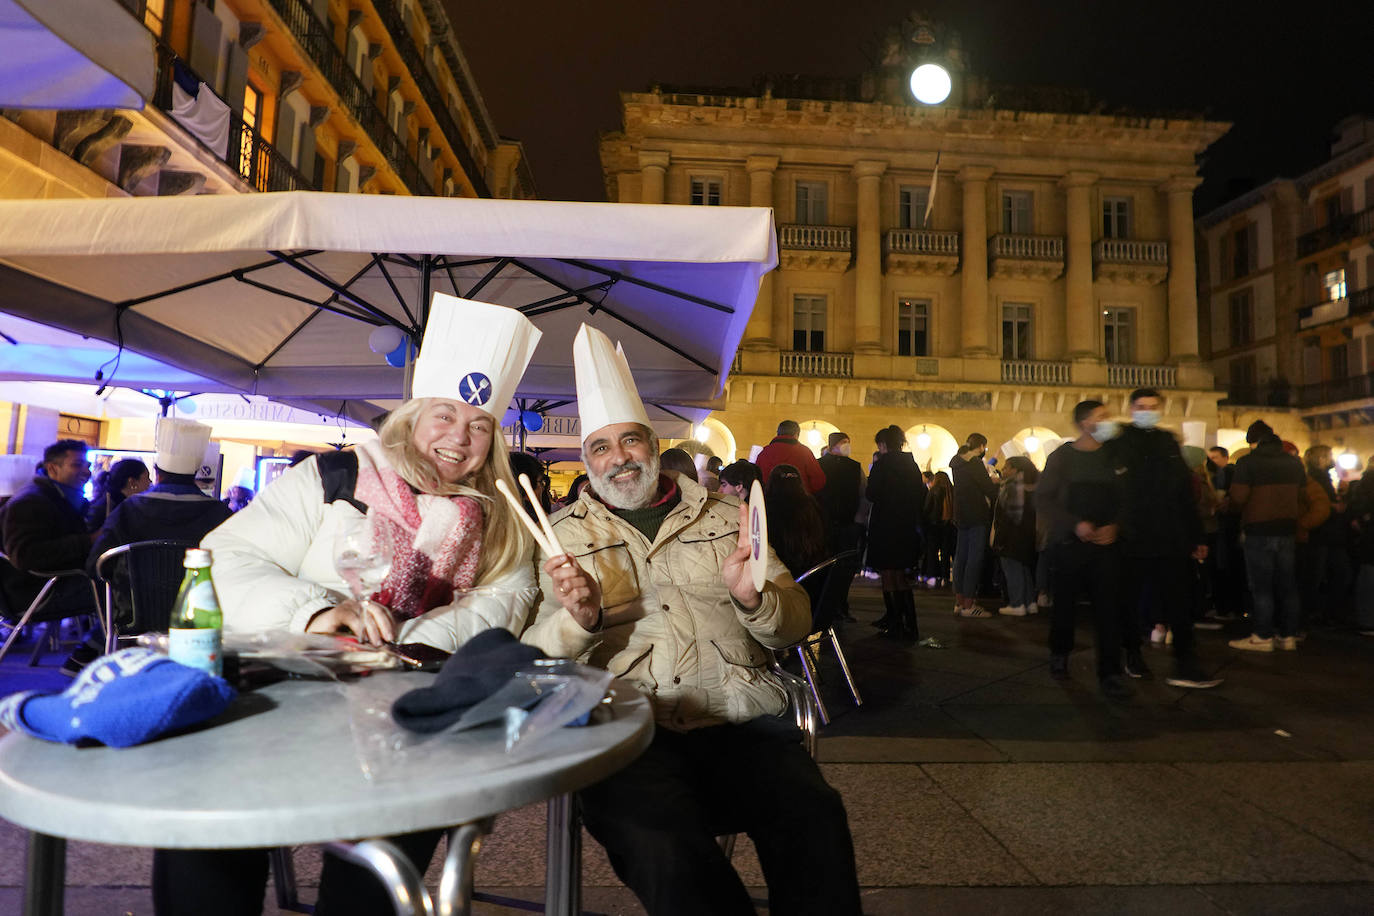 Fotos: La fiesta de San Sebastián se abre paso entre restricciones